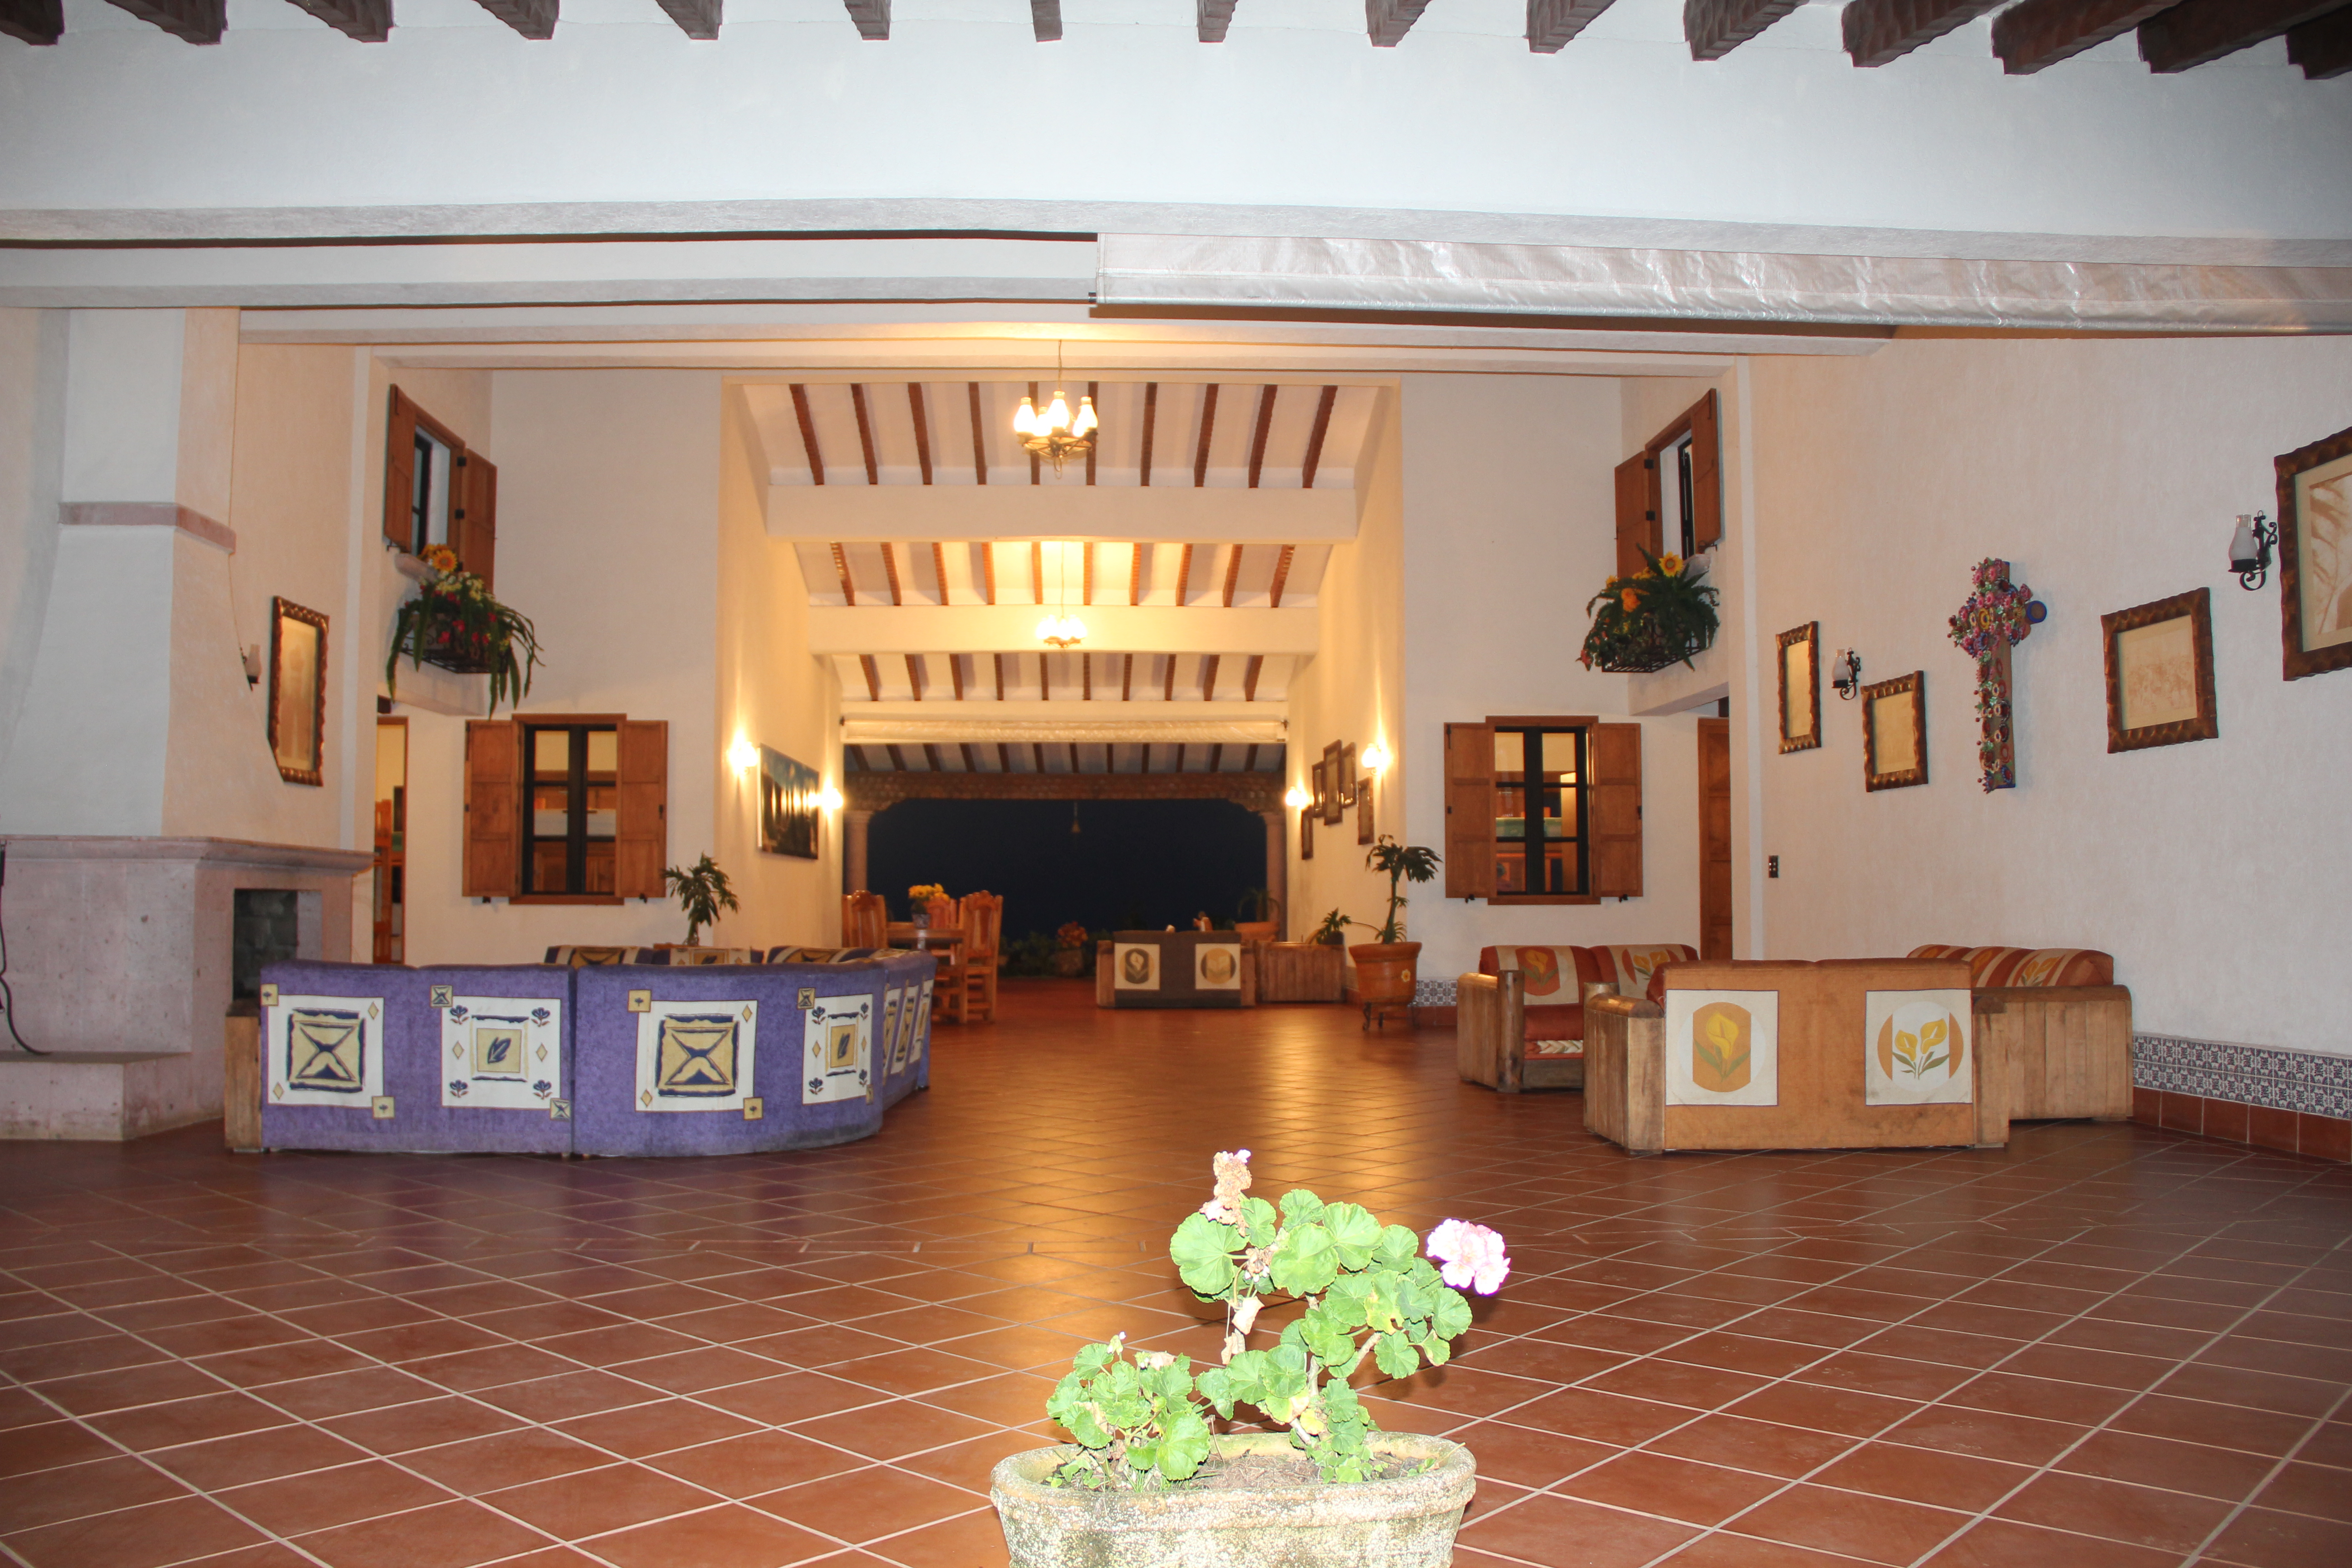 Sala de estar Centro misionero y de espiritualidad de Chilapa, Pico de Orizaba